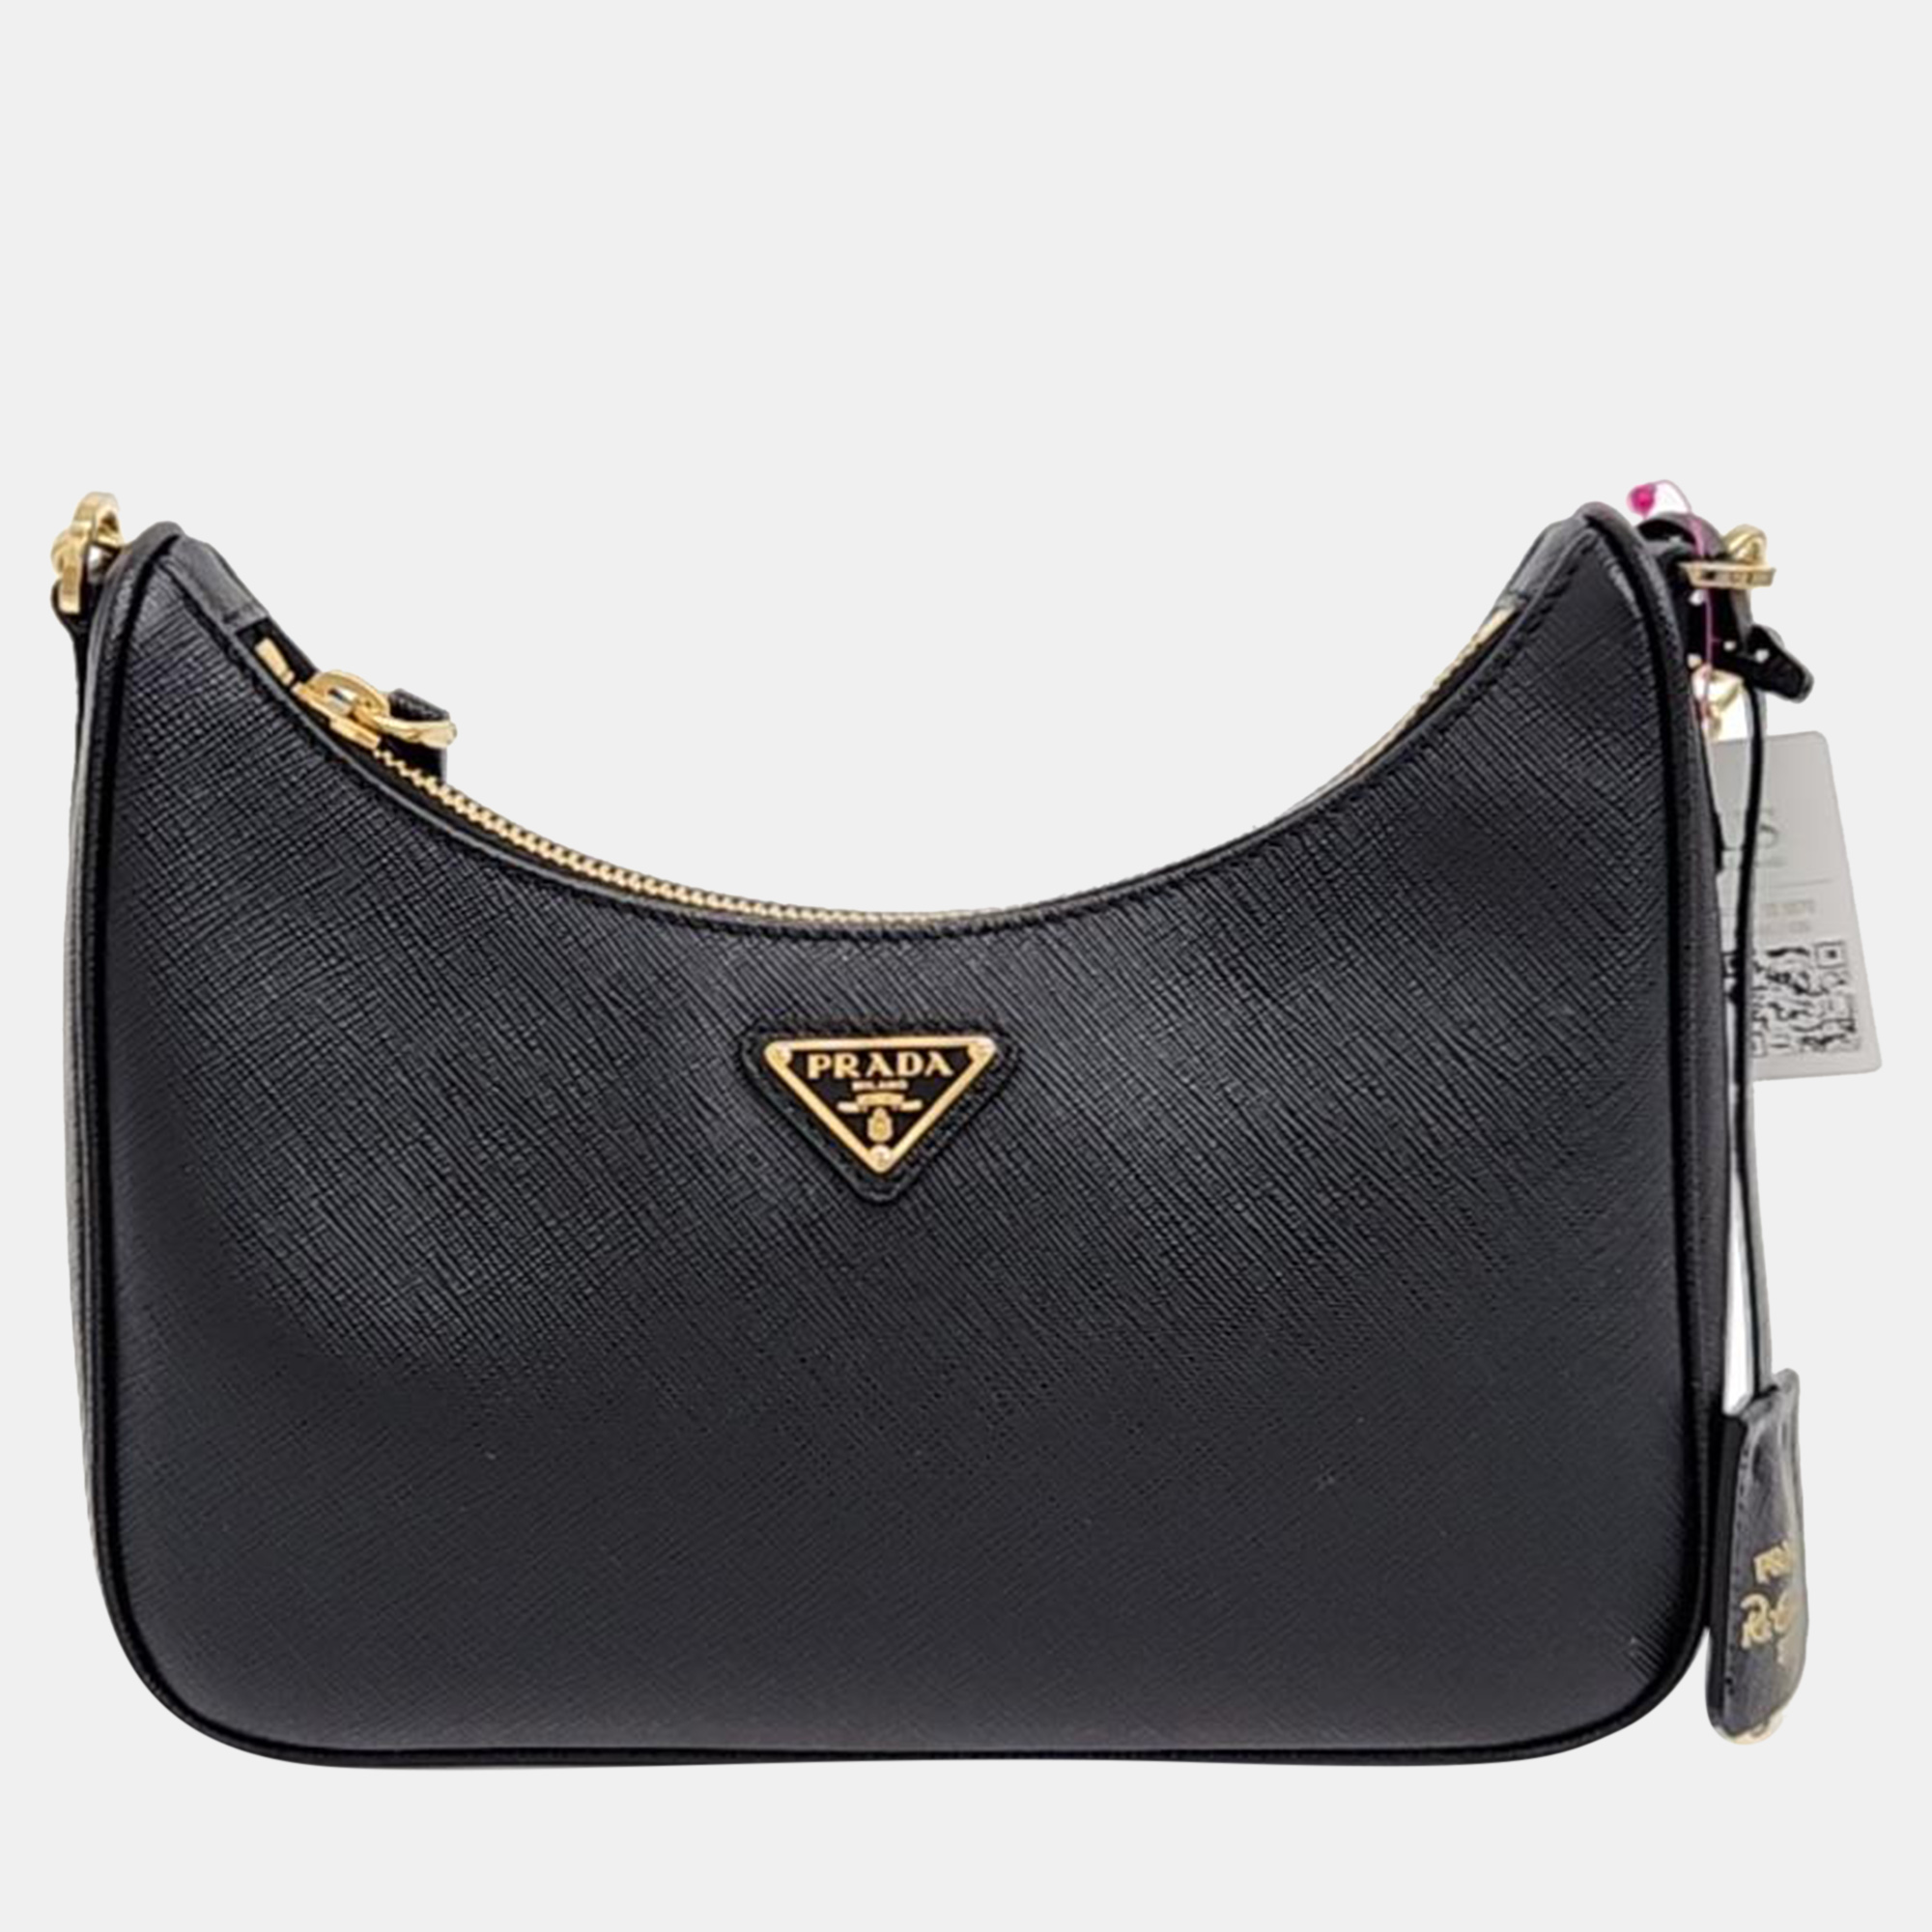 Prada black saffiano lux leather chain hobo bag